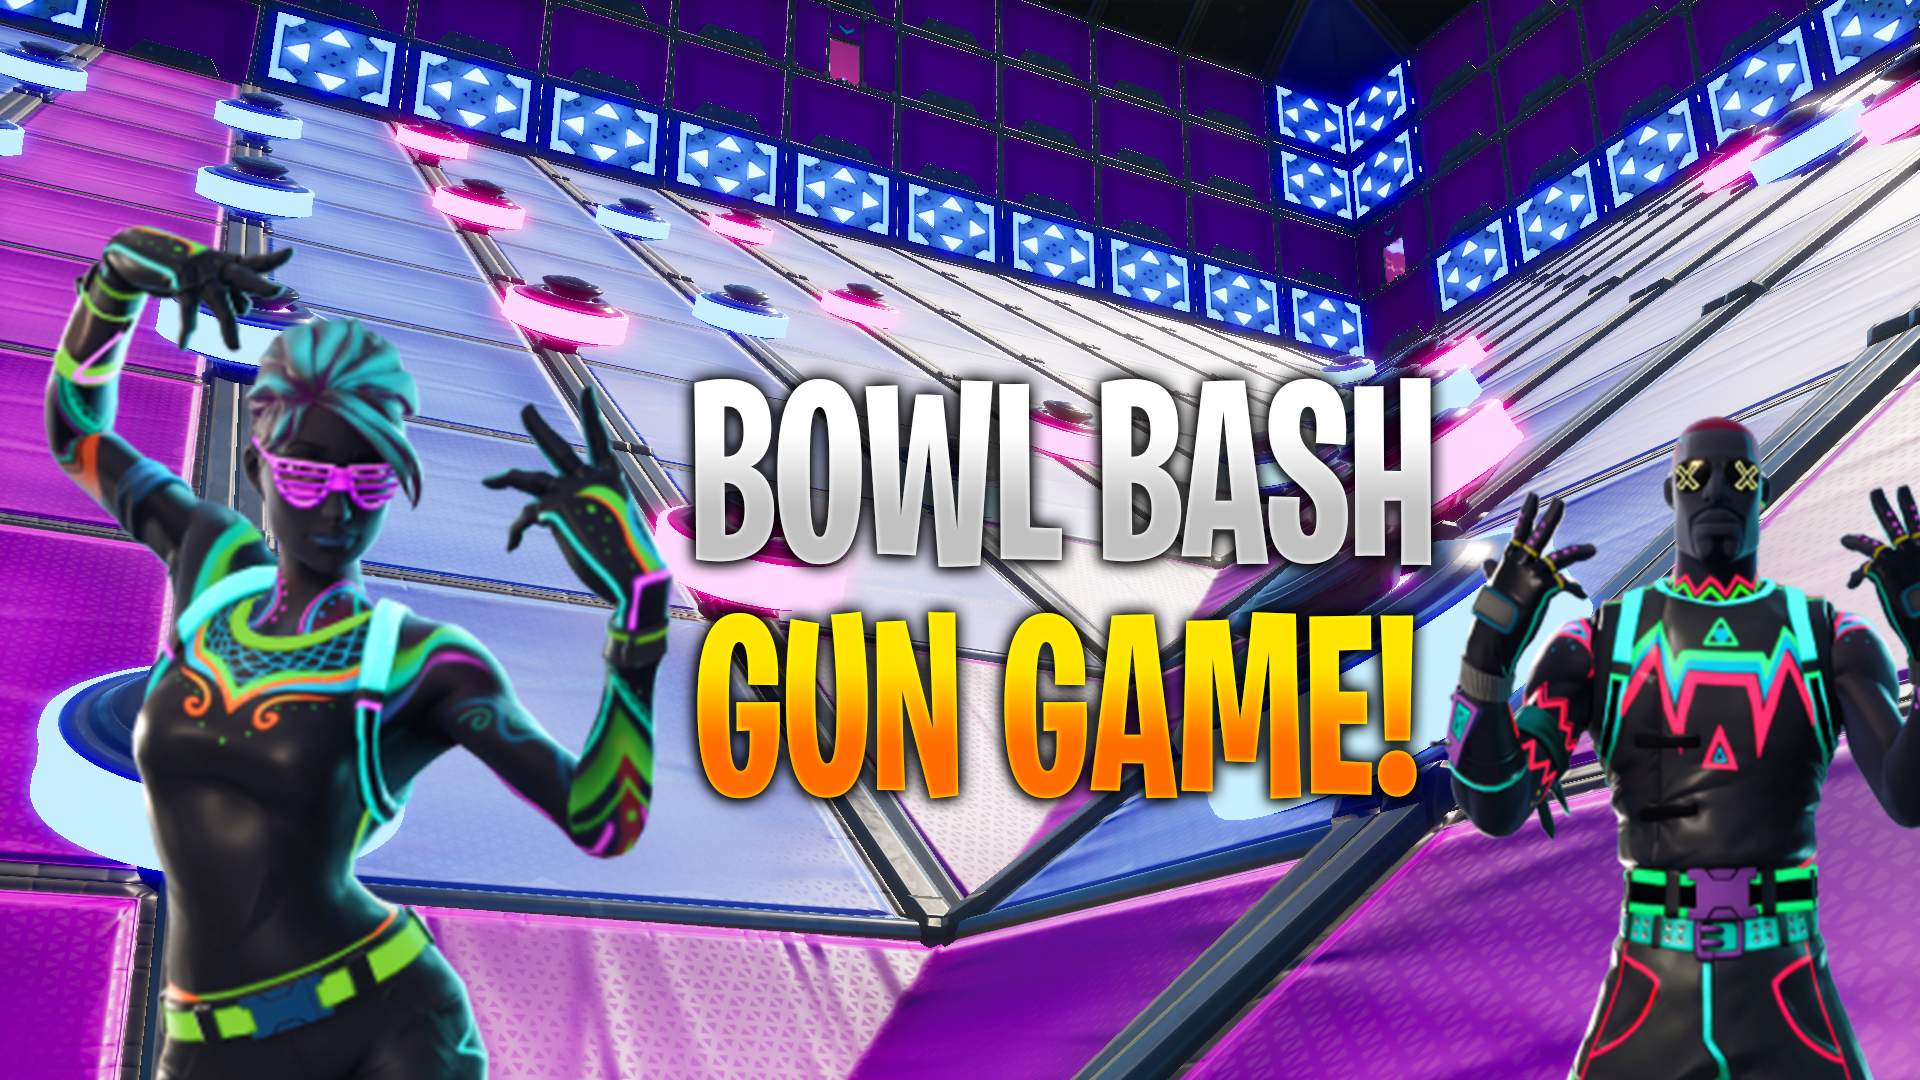 BOWL BASH GUN GAME!